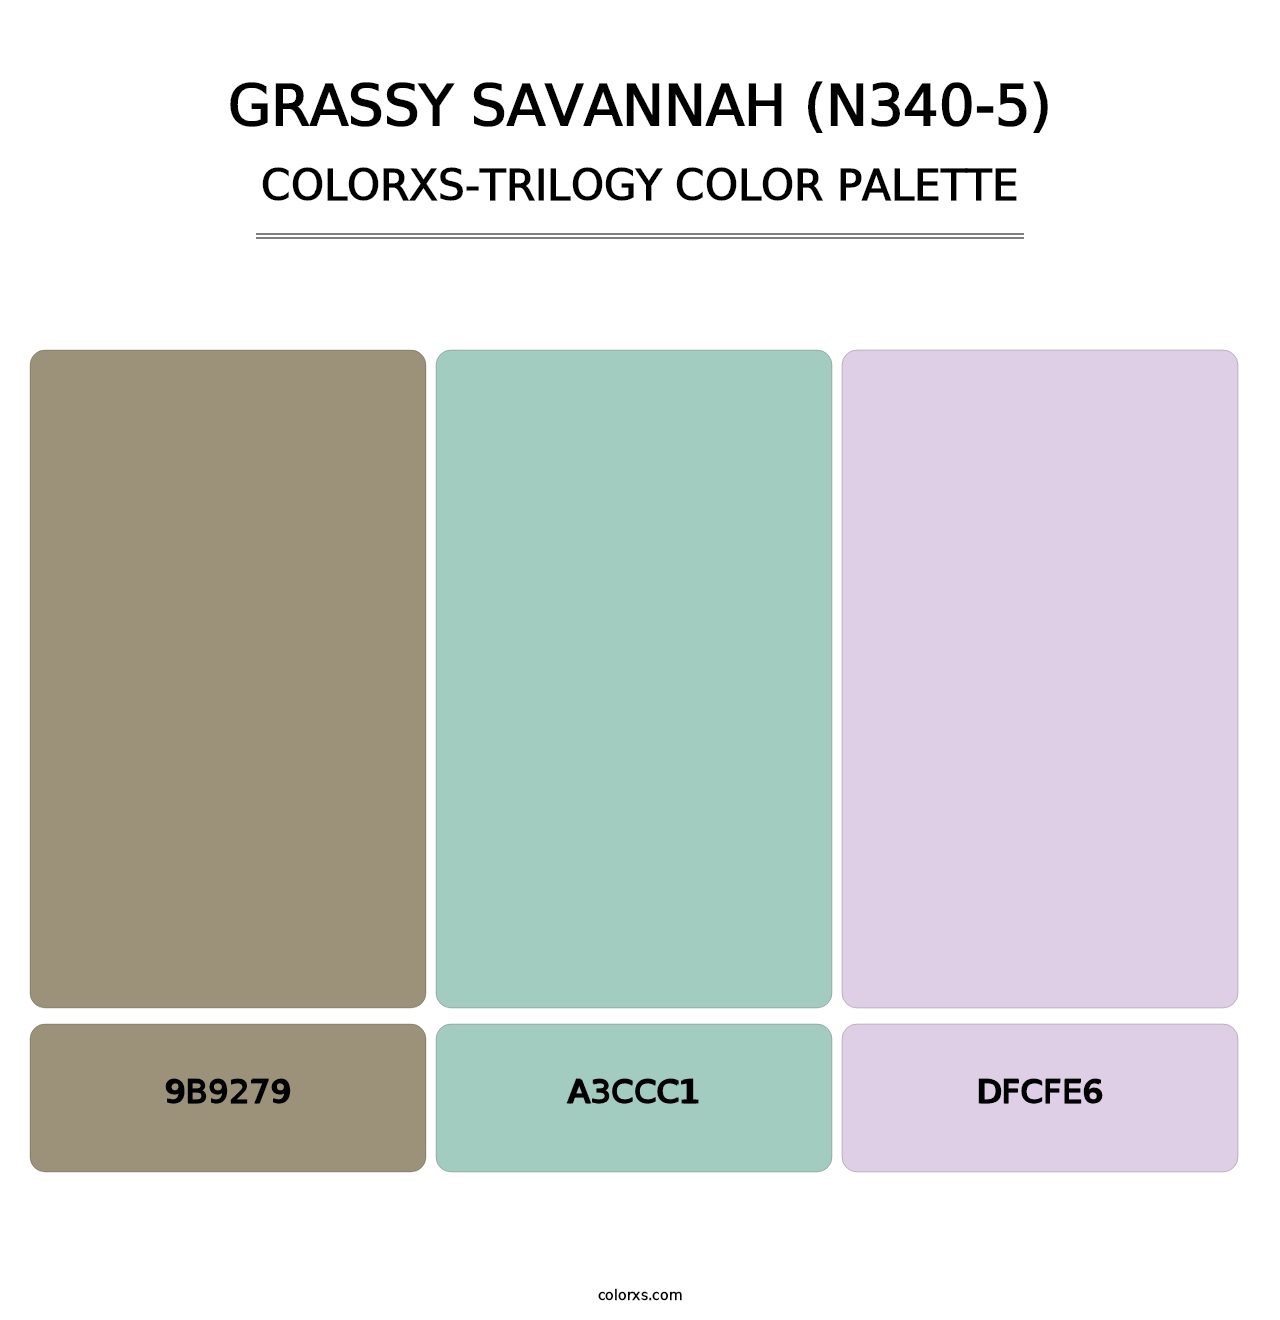 Grassy Savannah (N340-5) - Colorxs Trilogy Palette